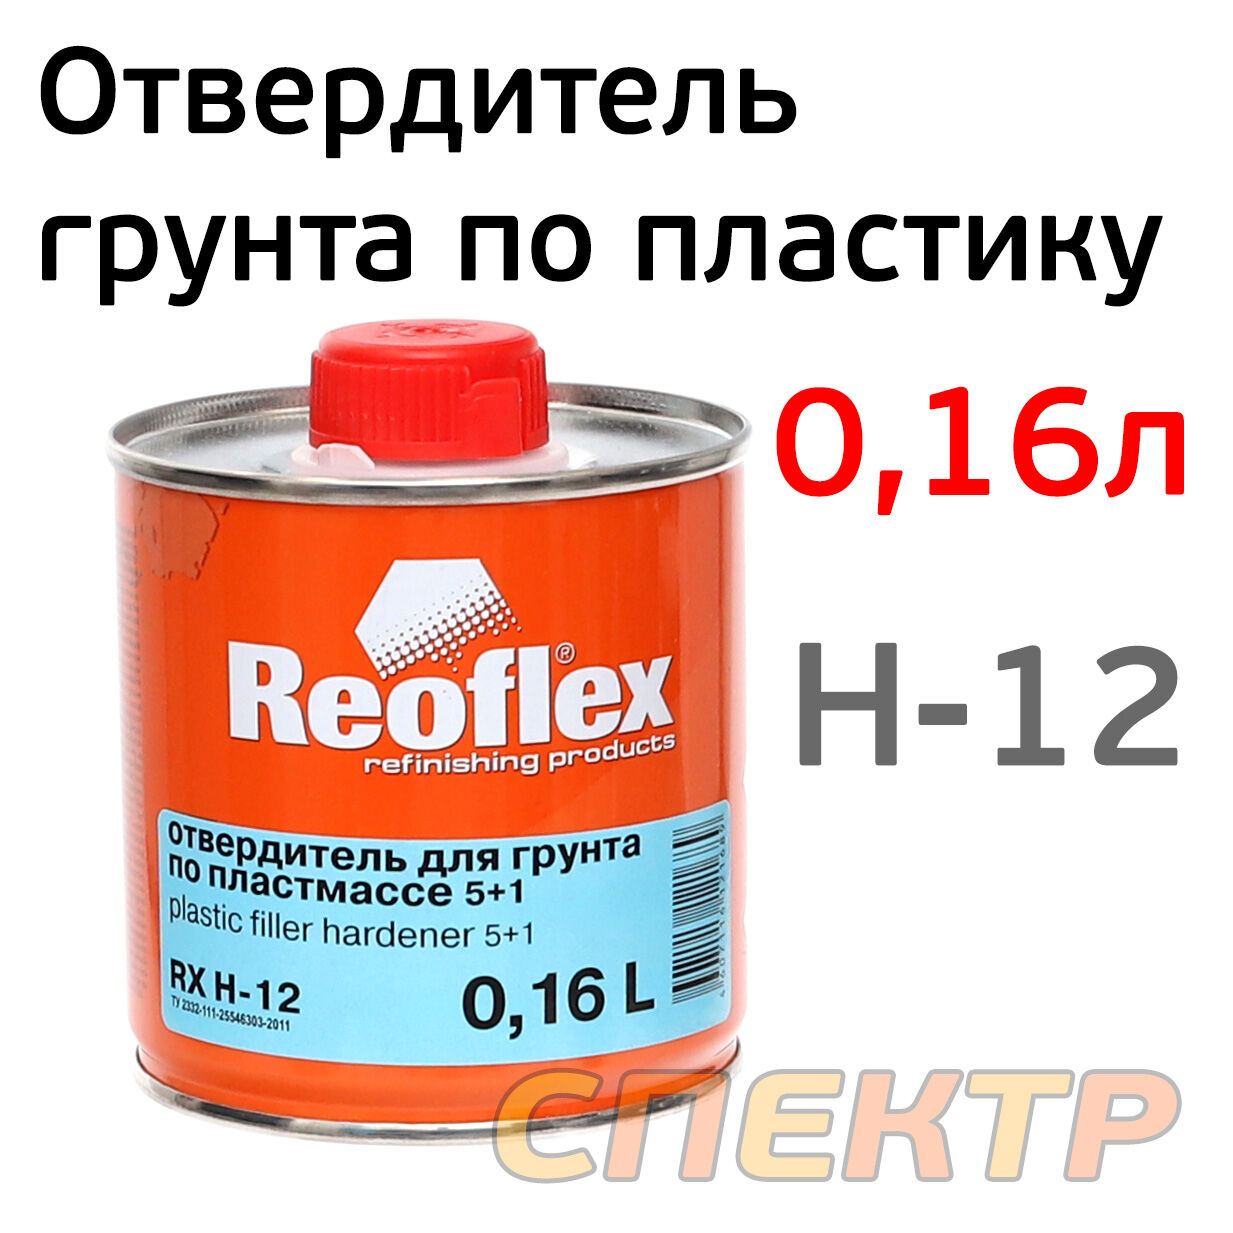 Отвердитель грунта по пластику Reoflex 5+1 (0.16л)